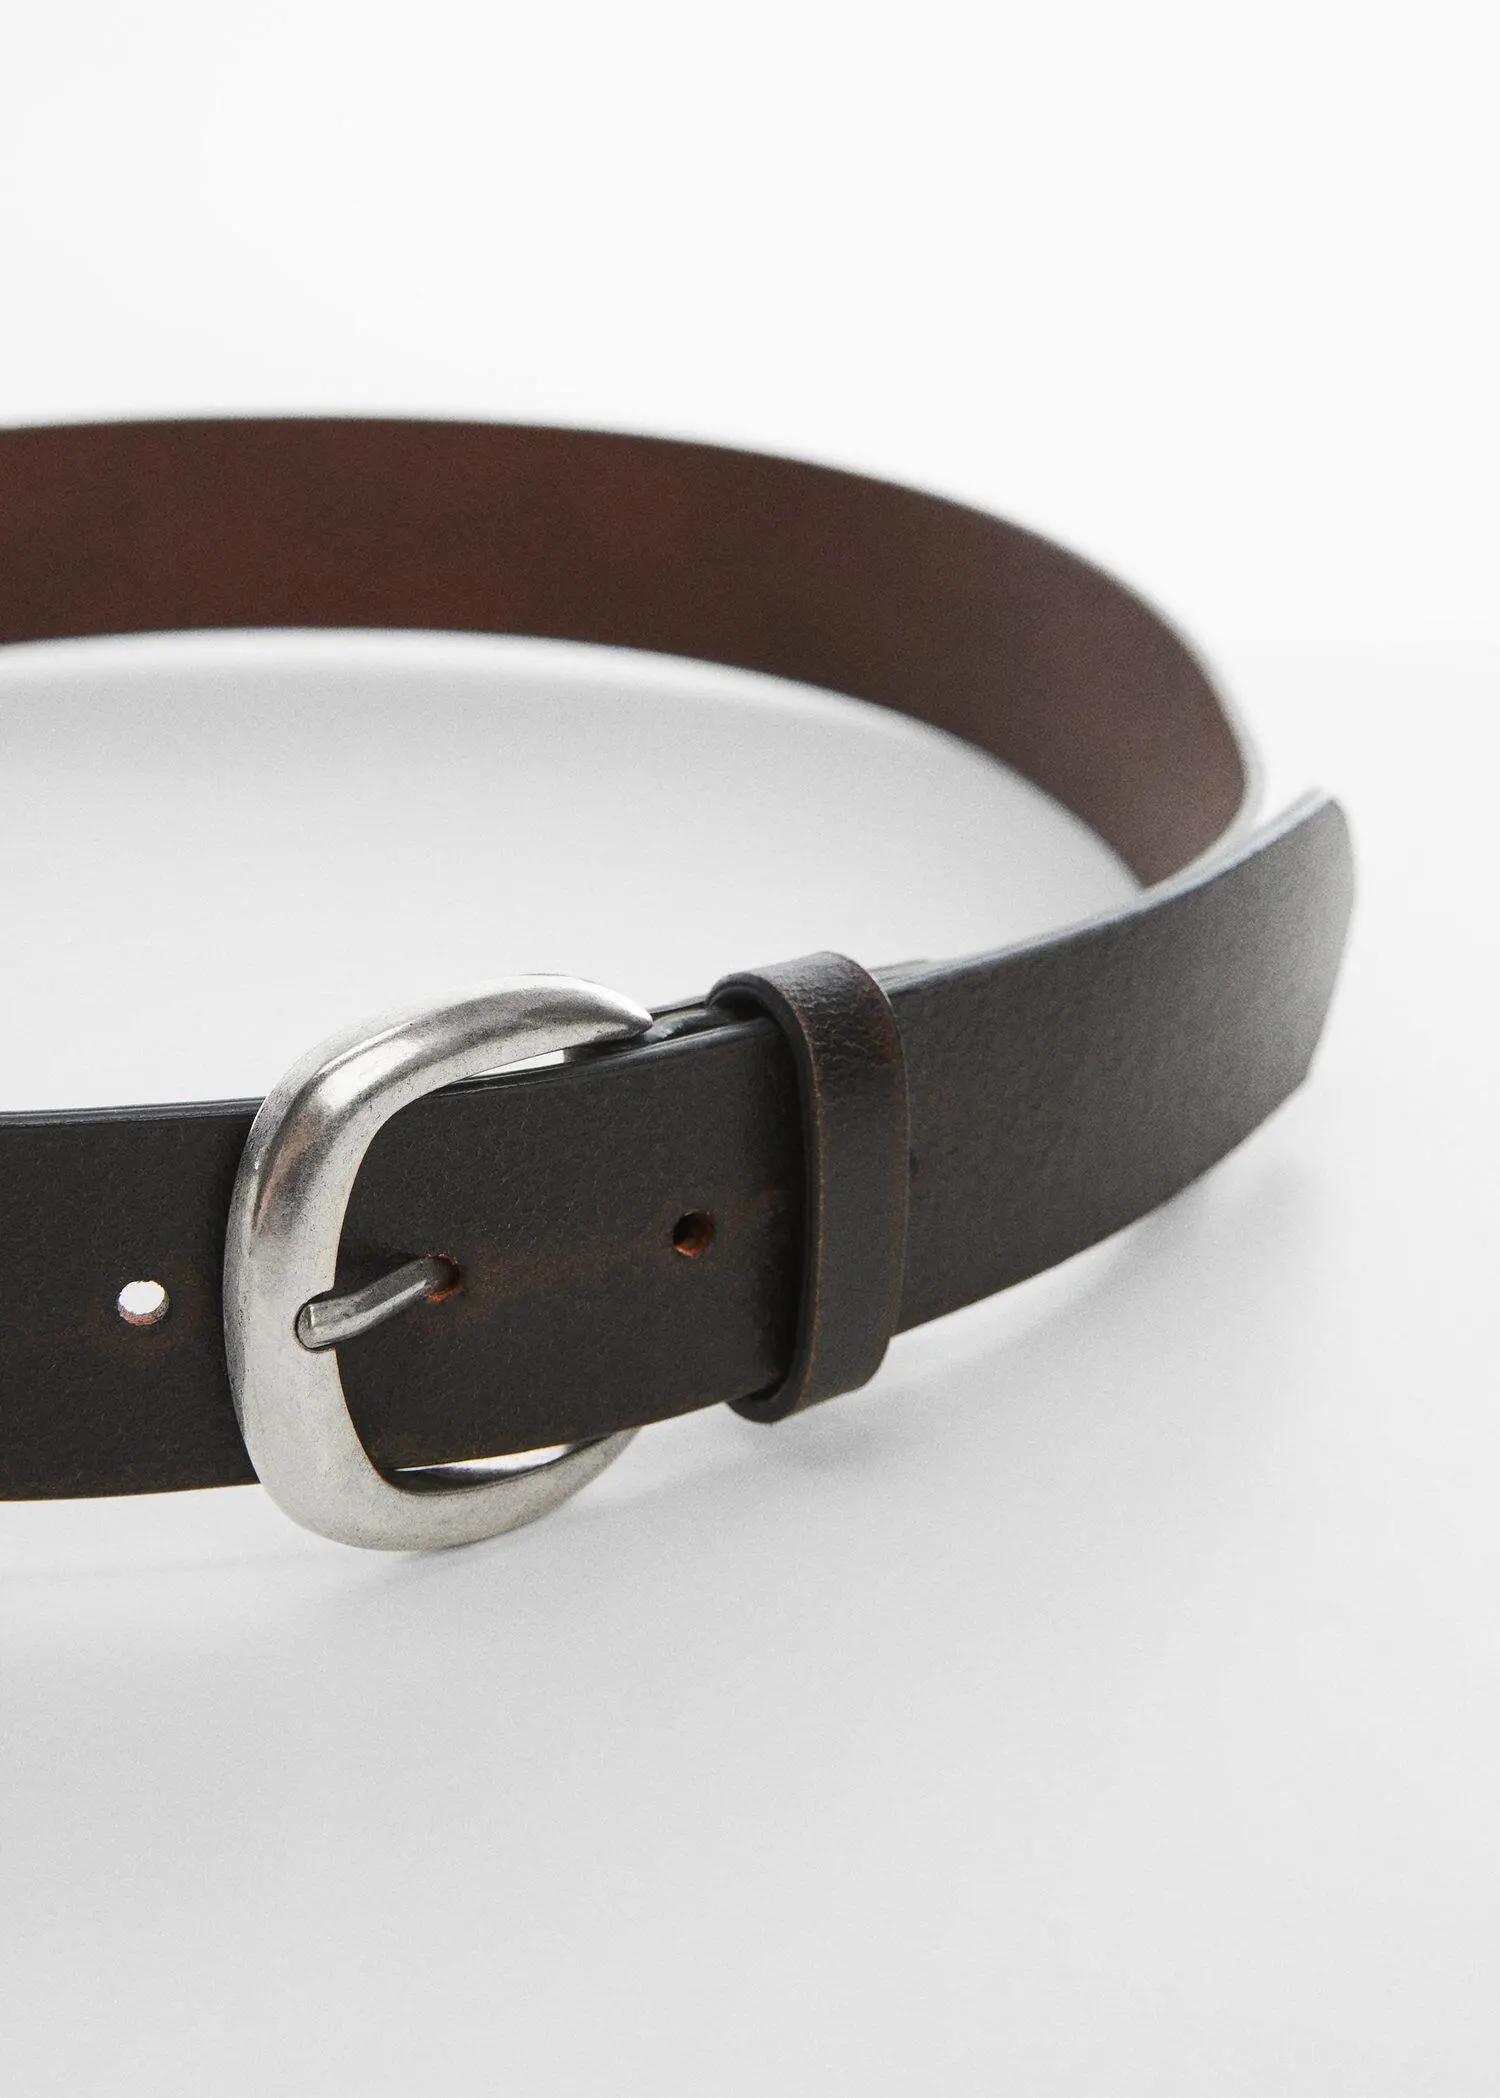 Mango Leather belt. 1